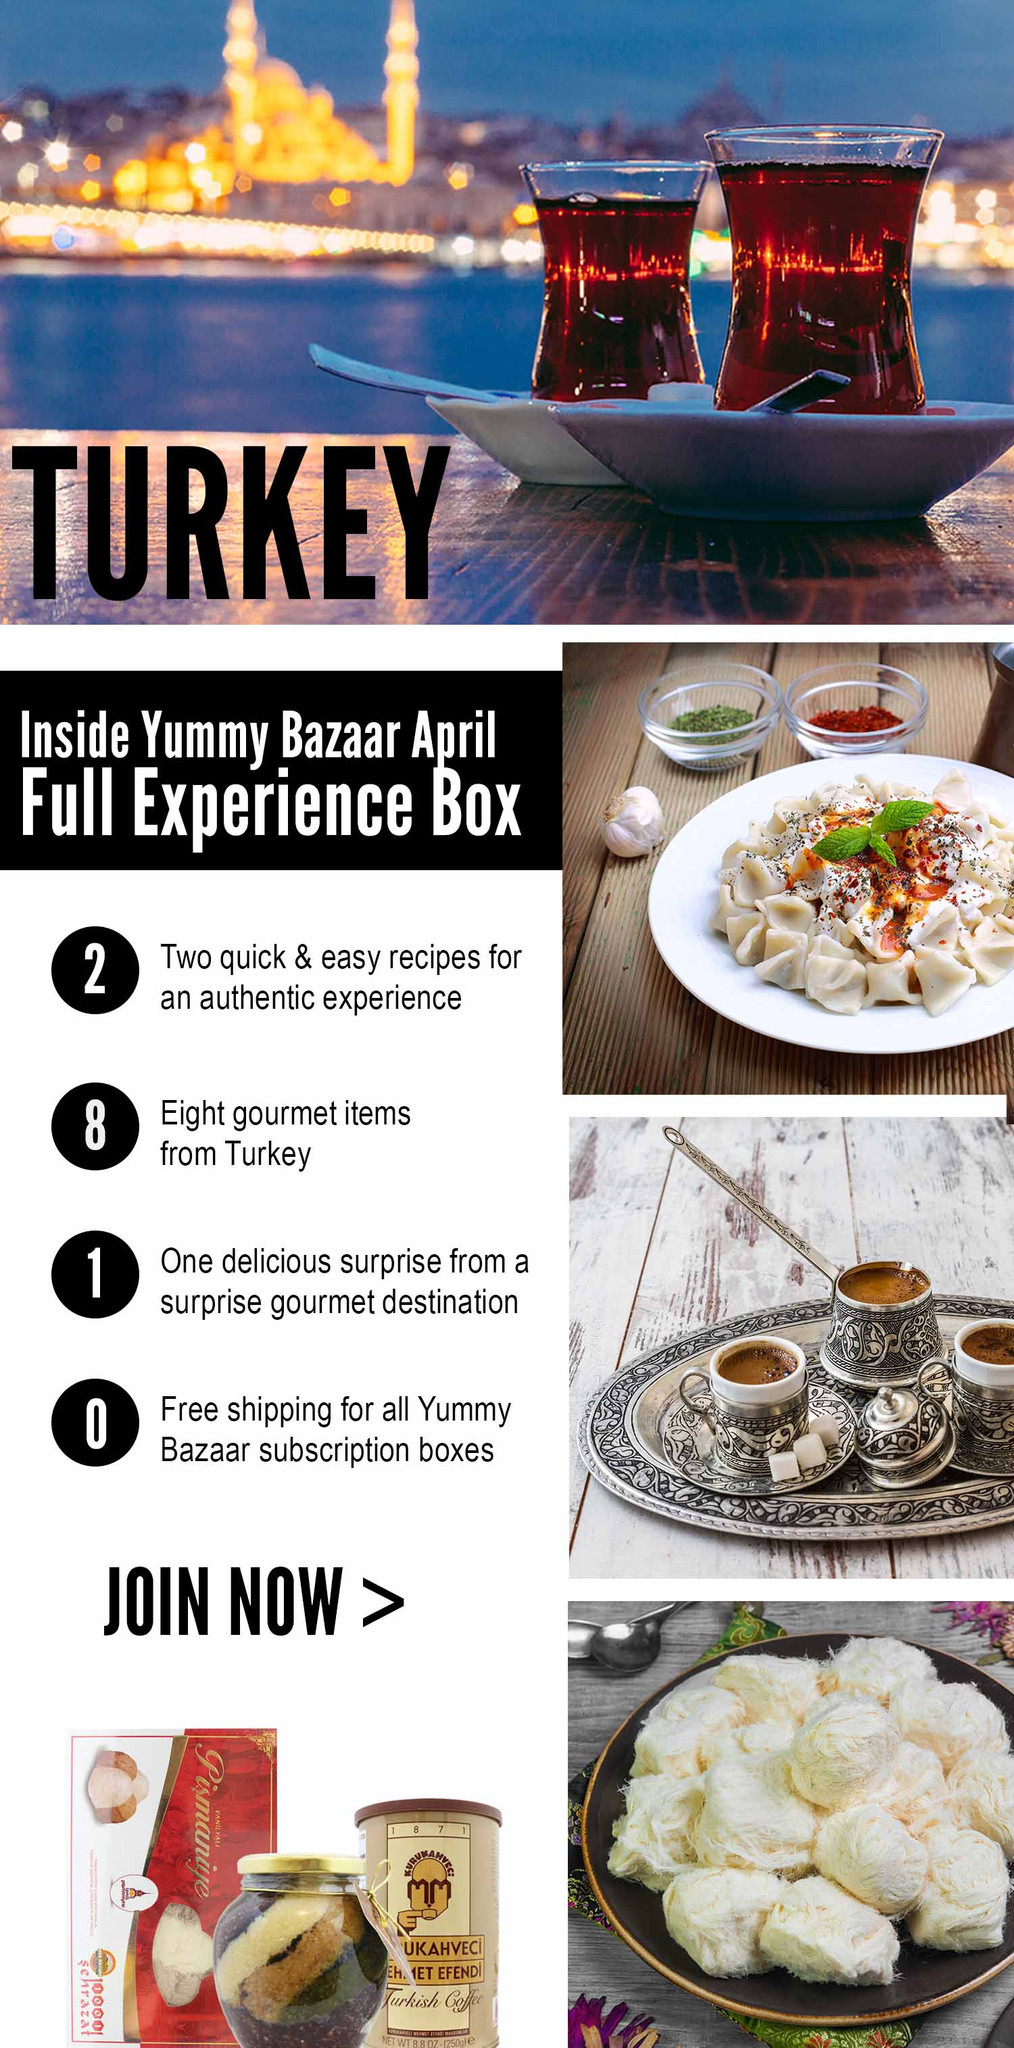 Yummy_Bazaar_April_Turkey_Box